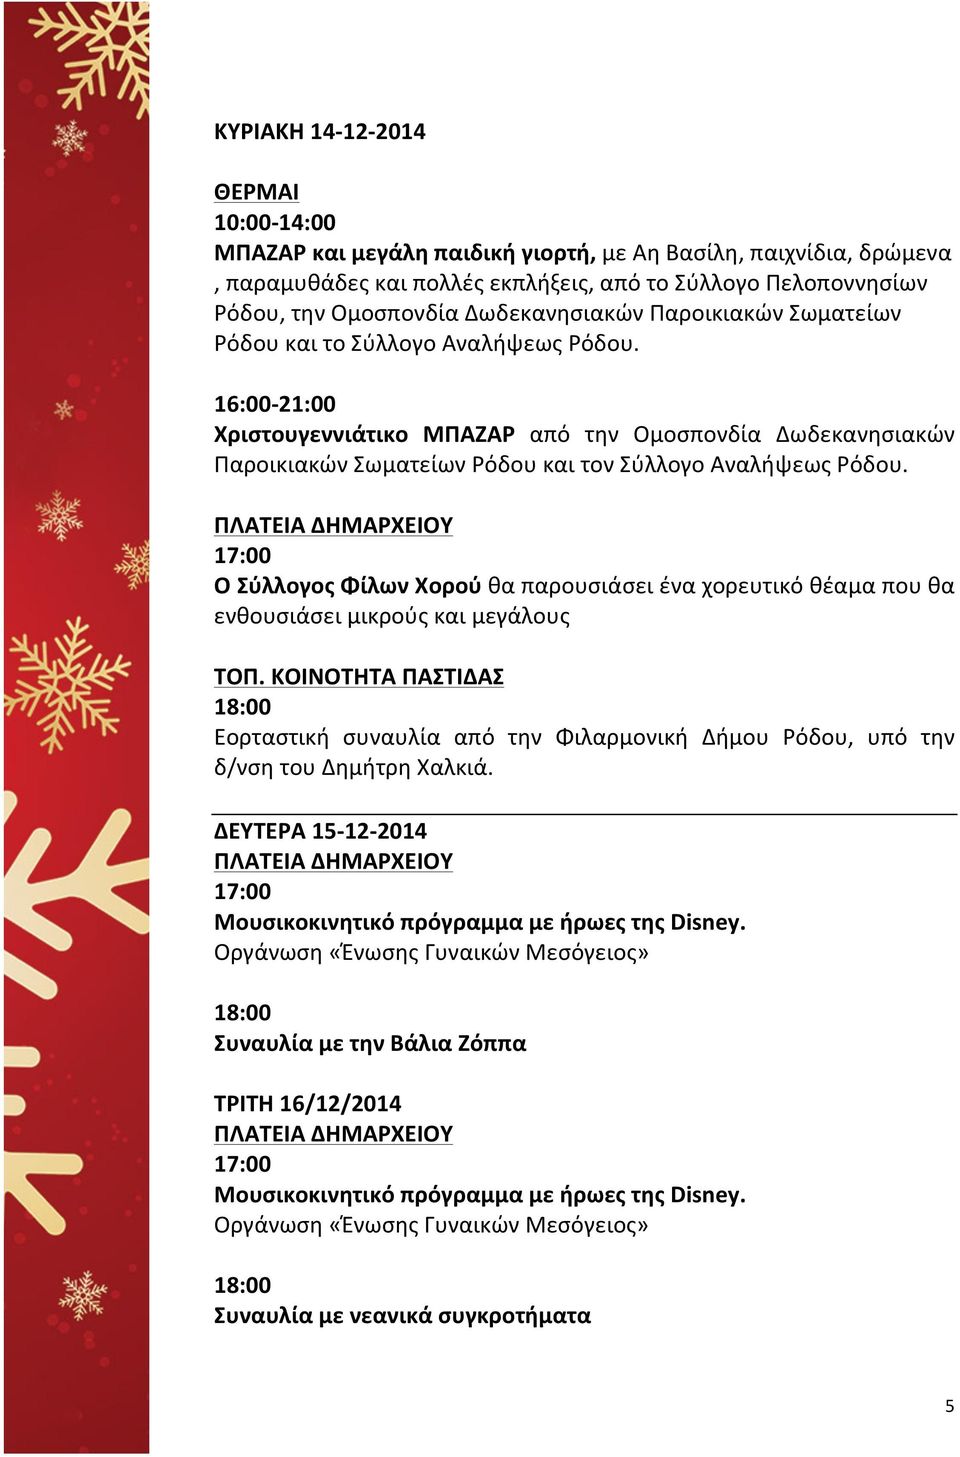 16:00-21:00 Χριστουγεννιάτικο ΜΠΑΖΑΡ από την Ομοσπονδία Δωδεκανησιακών Παροικιακών Σωματείων Ρόδου και τον Σύλλογο Αναλήψεως Ρόδου.